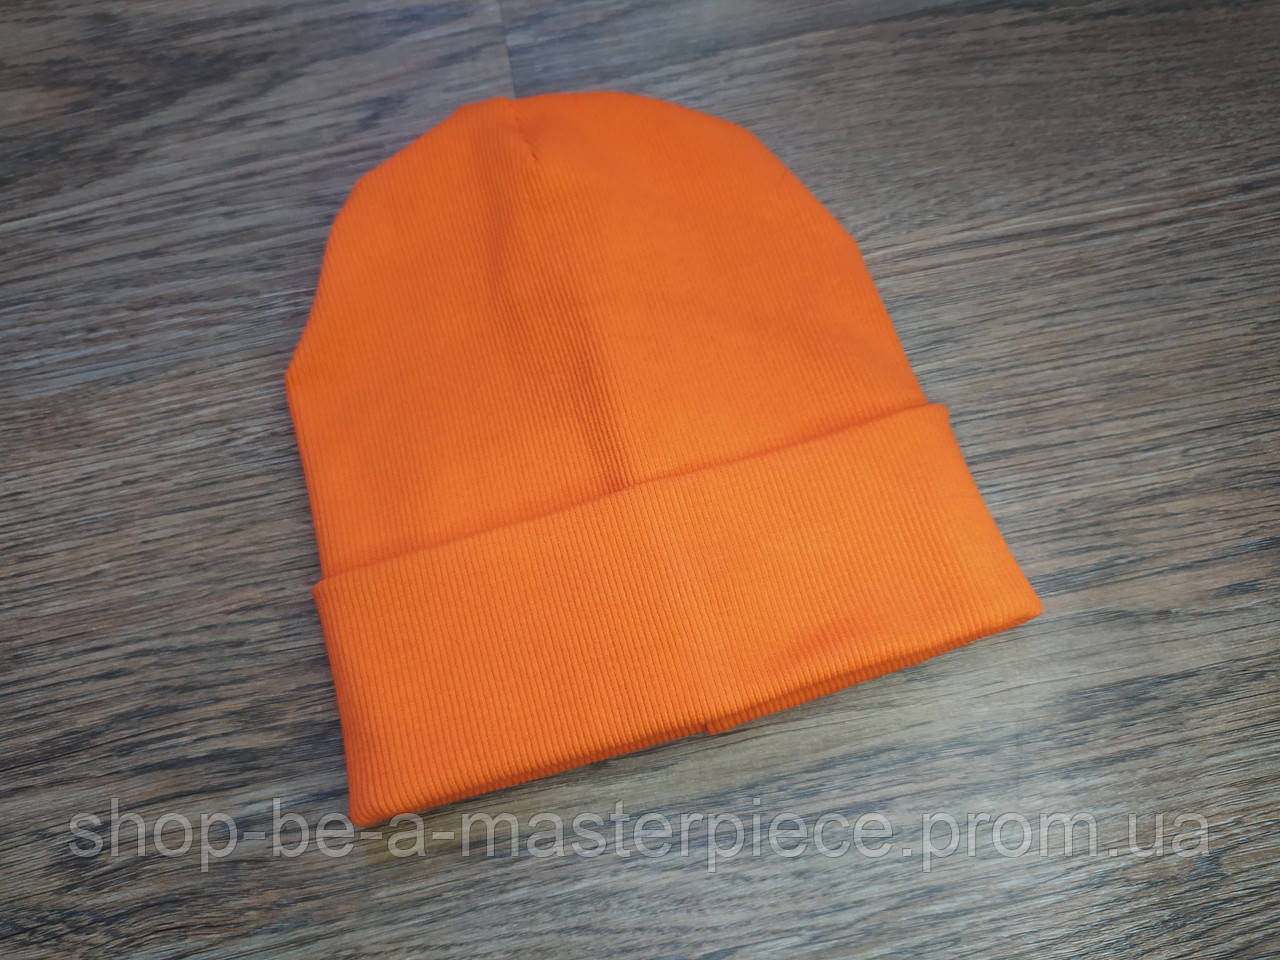 Трикотажна шапка onesize унісекс жіноча чоловіча подвійна з відворотом демісезонна в рубчик помаранчевий